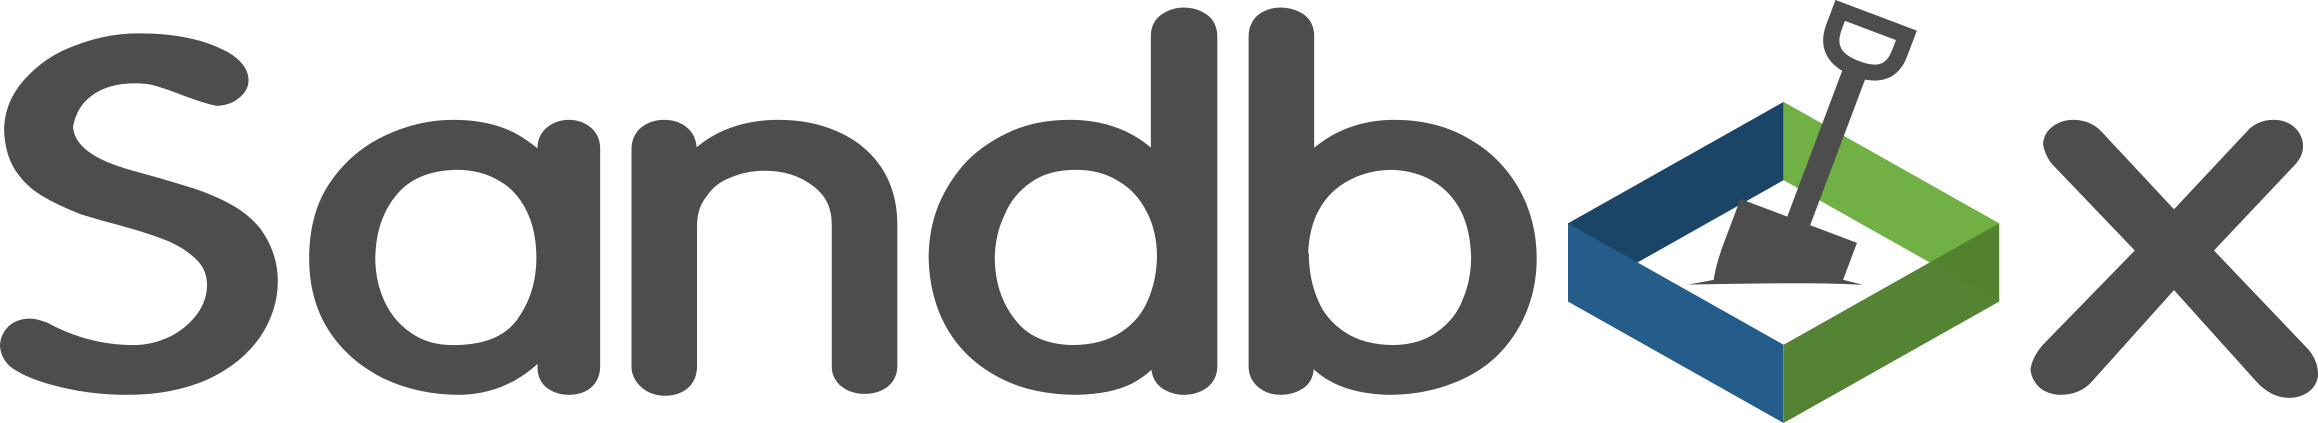 Edube Sandbox logo